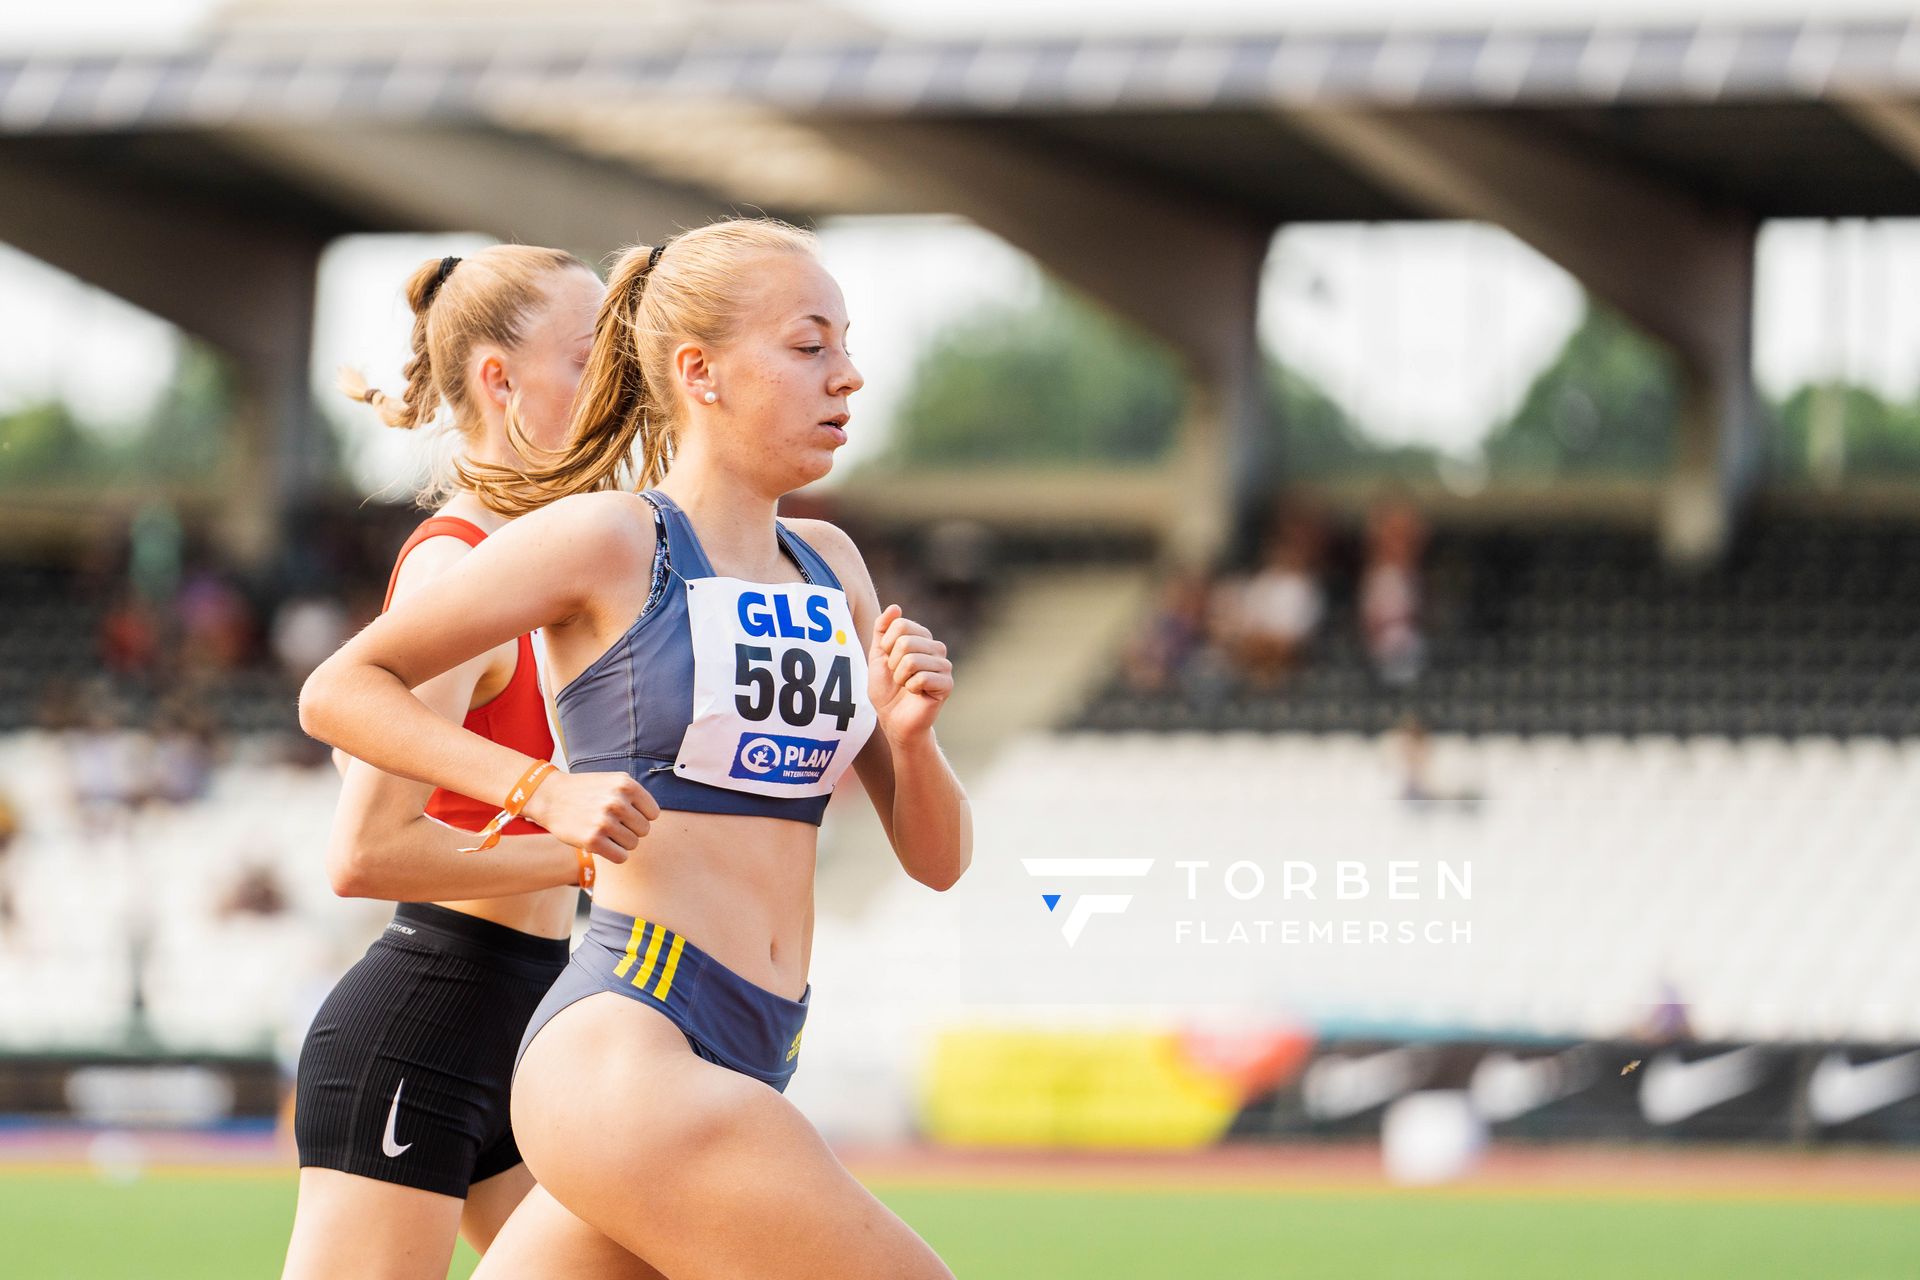 Carolin Hinrichs (VfL Loeningen) ueber 1500m am 15.07.2022 waehrend den deutschen Leichtathletik-Jugendmeisterschaften 2022 in Ulm